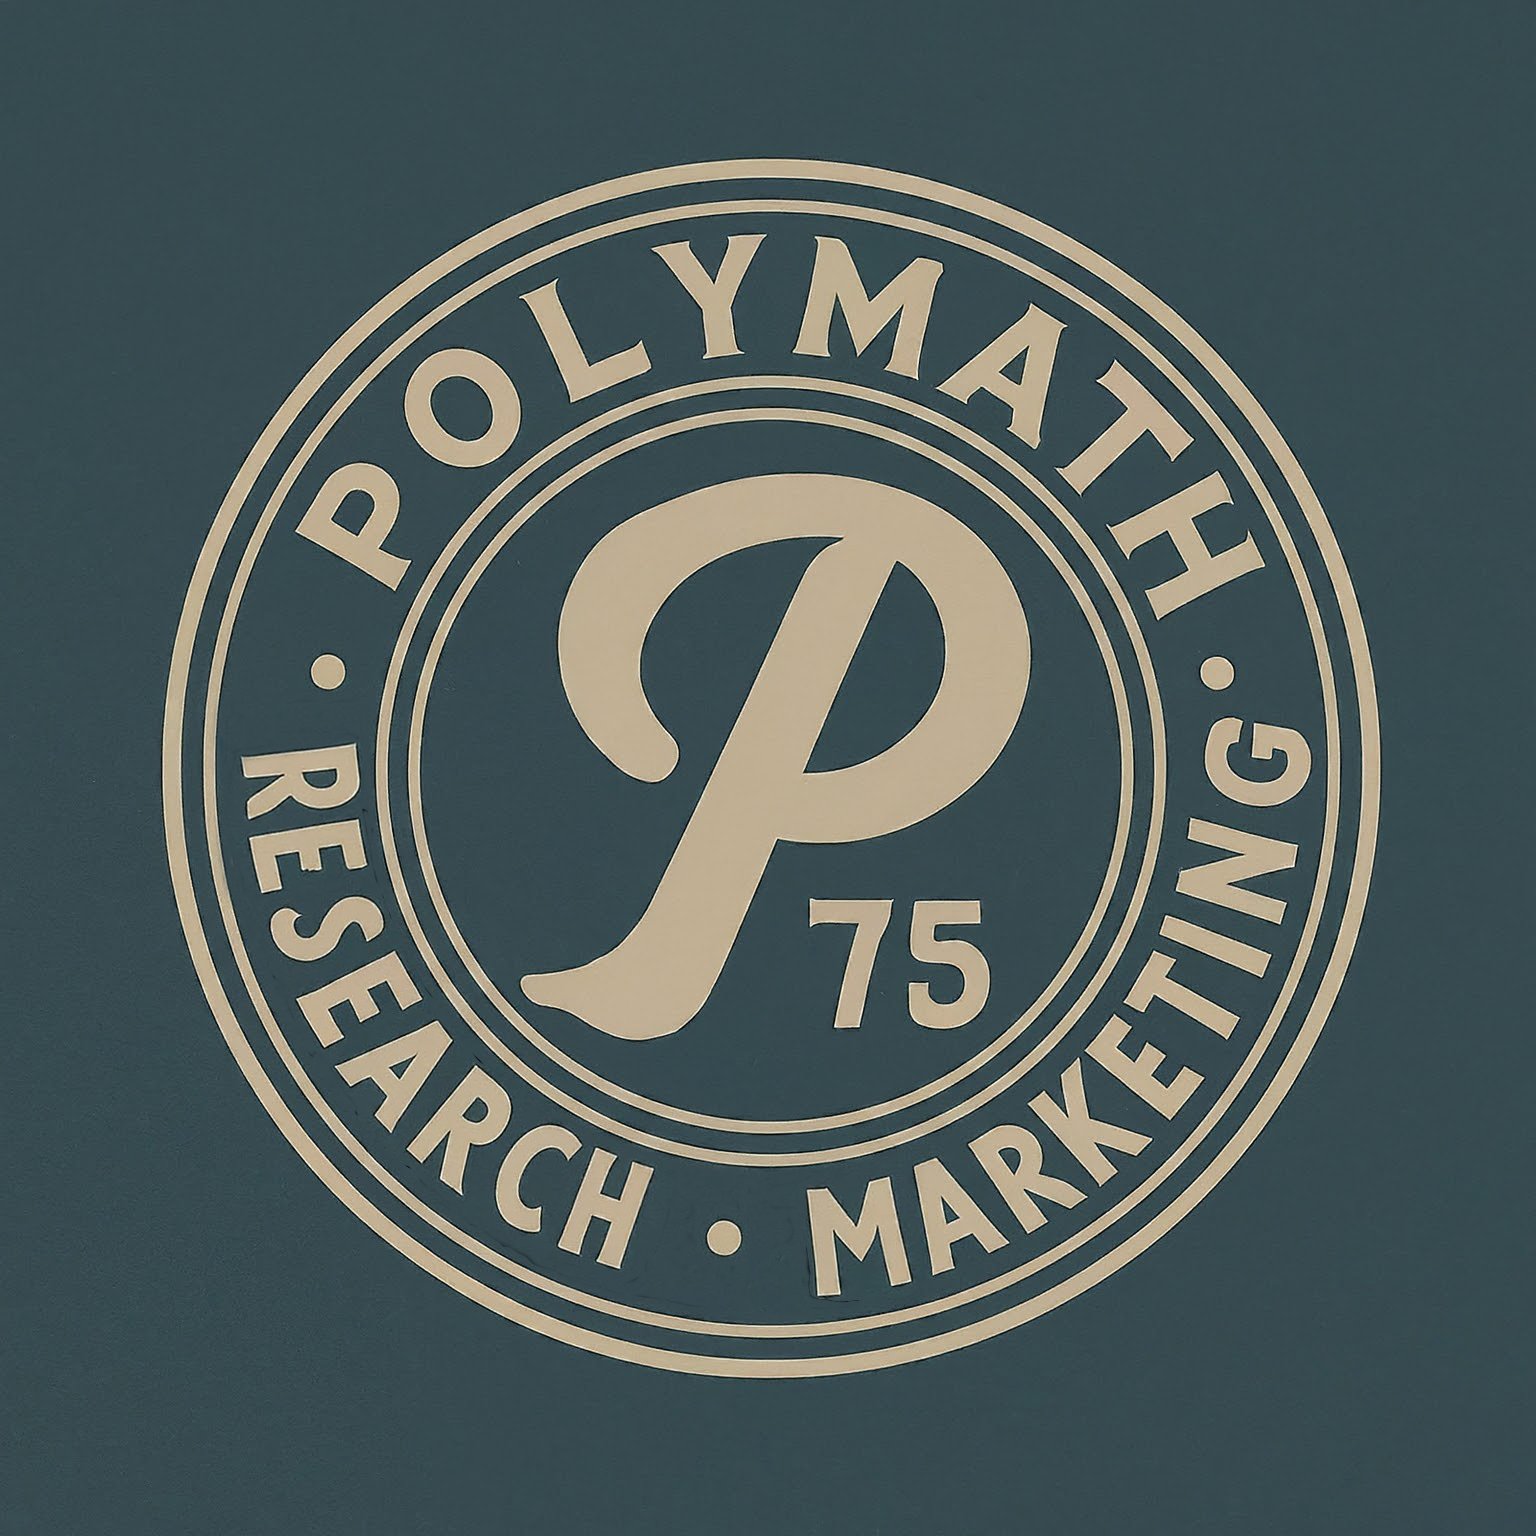 Polymath Research + Marketing